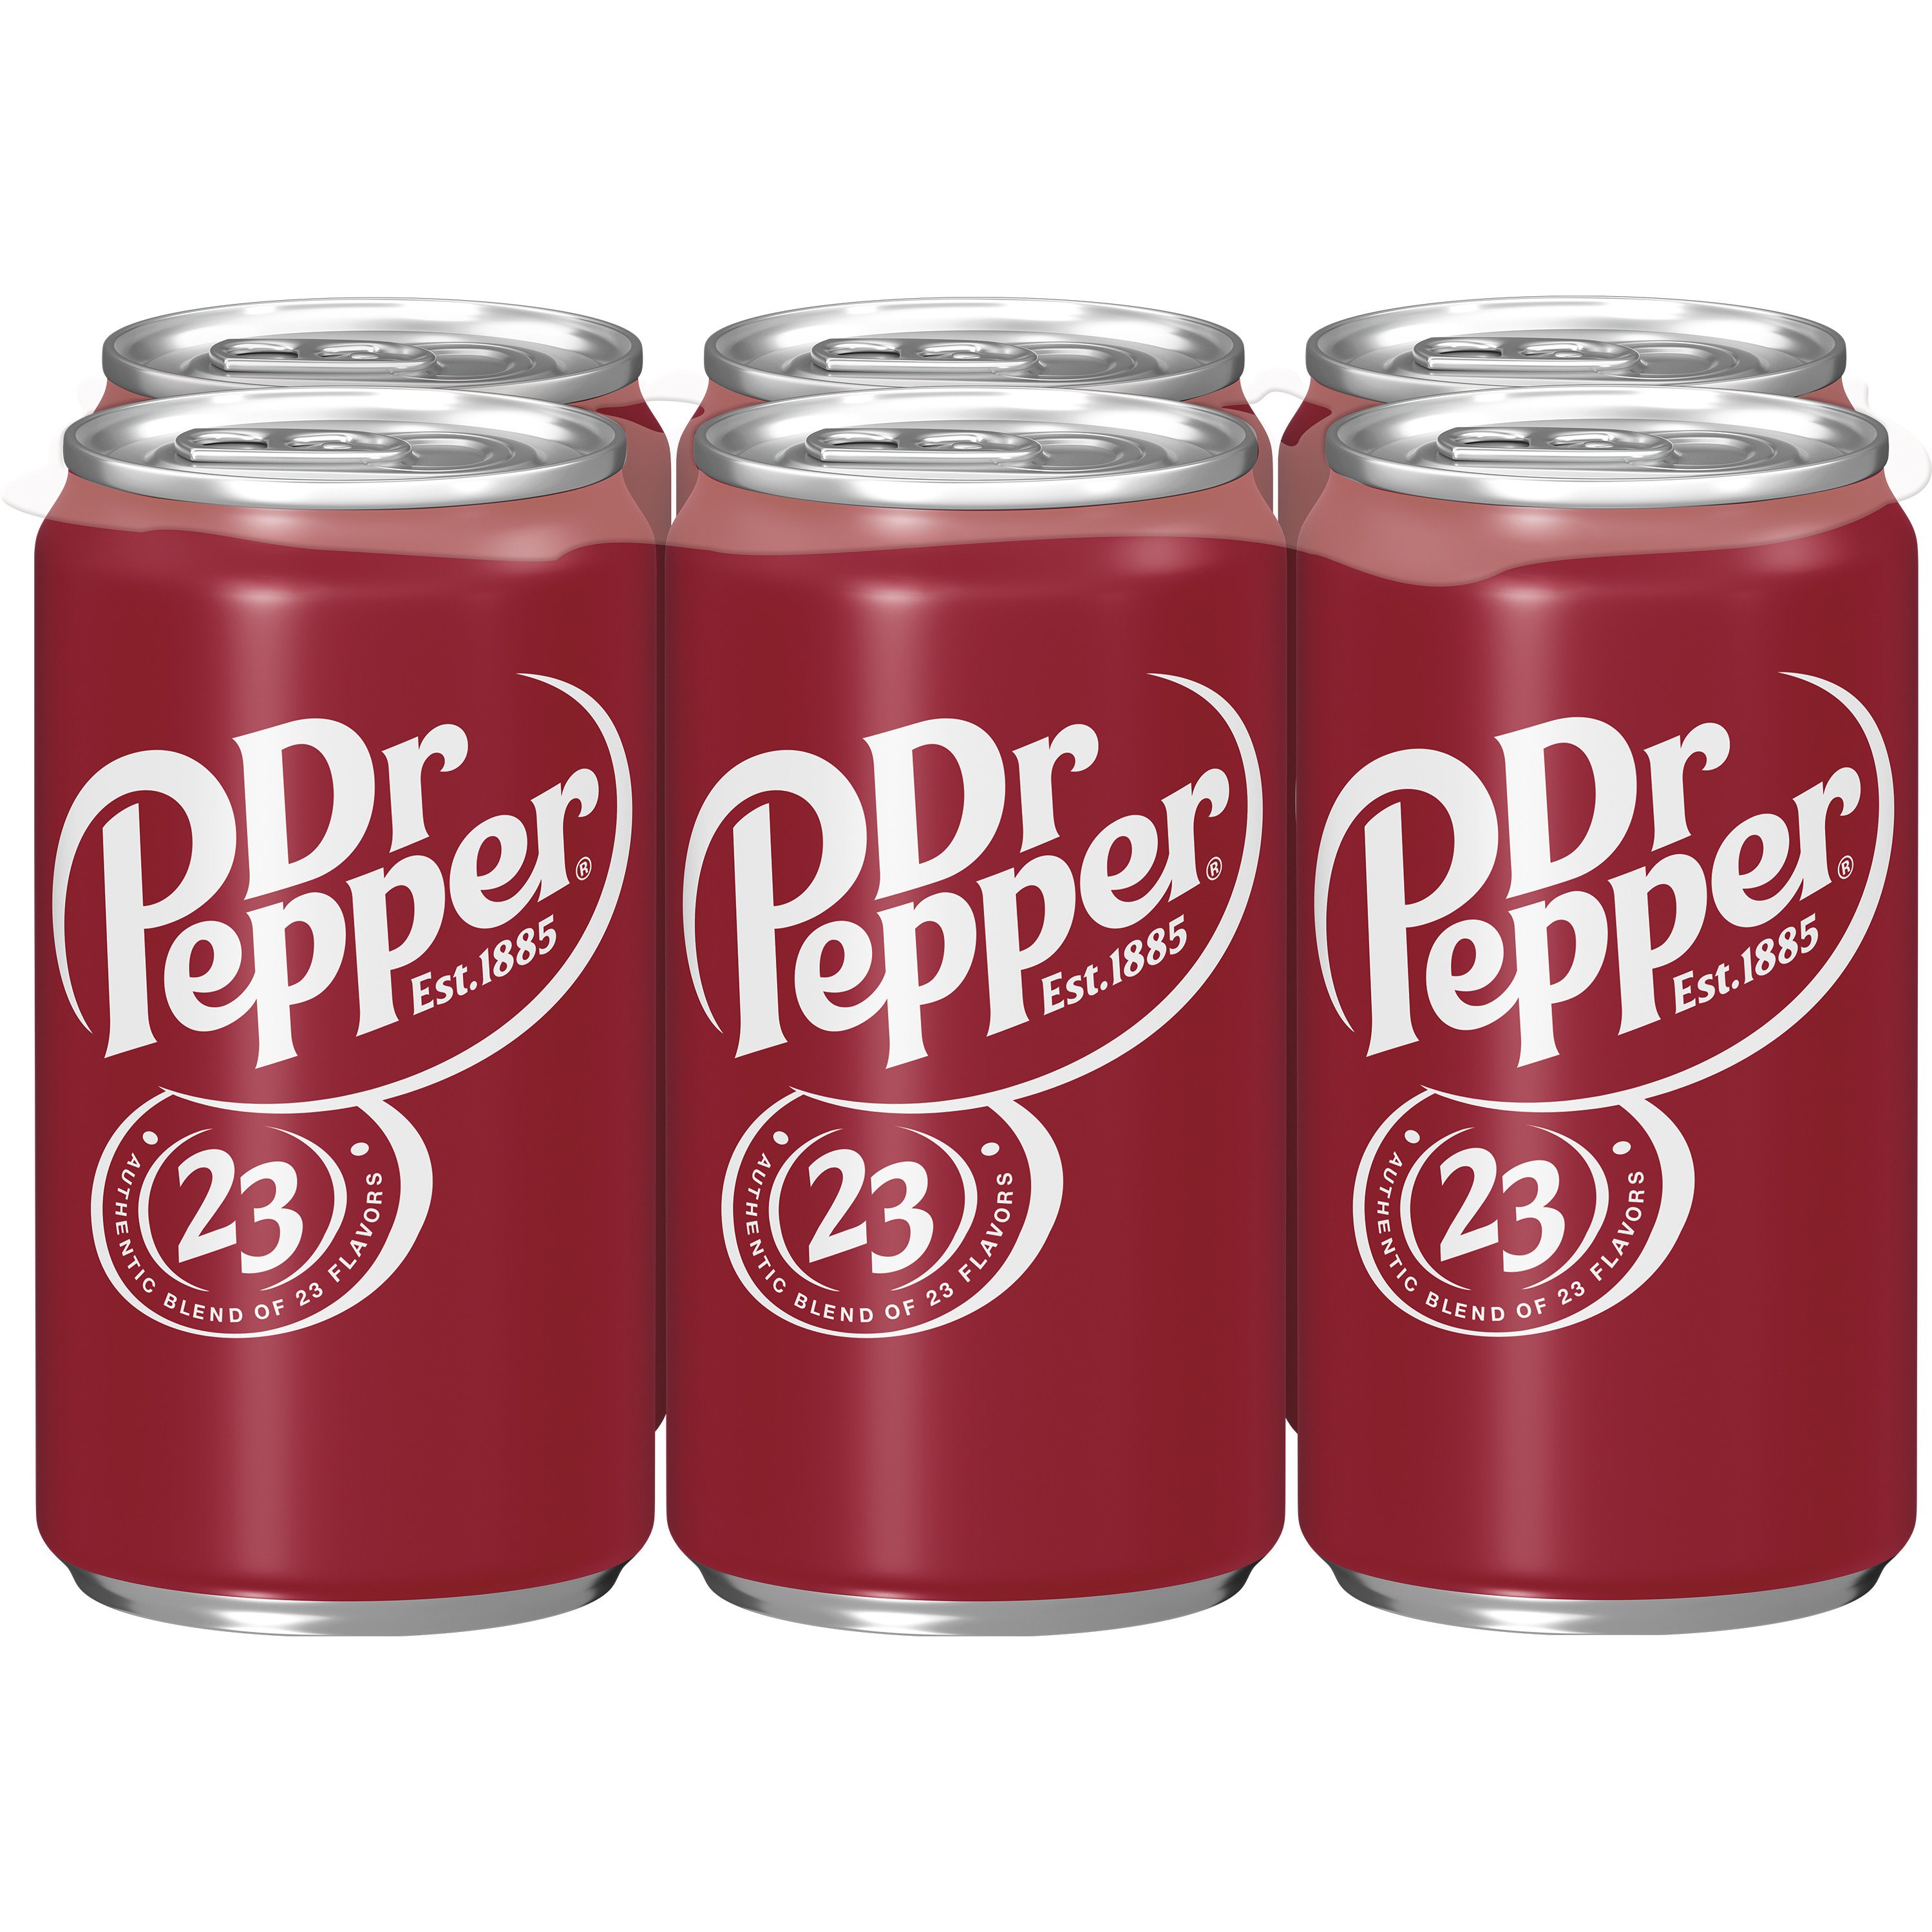 Dr. Pepper inspired 30 oz Tumbler